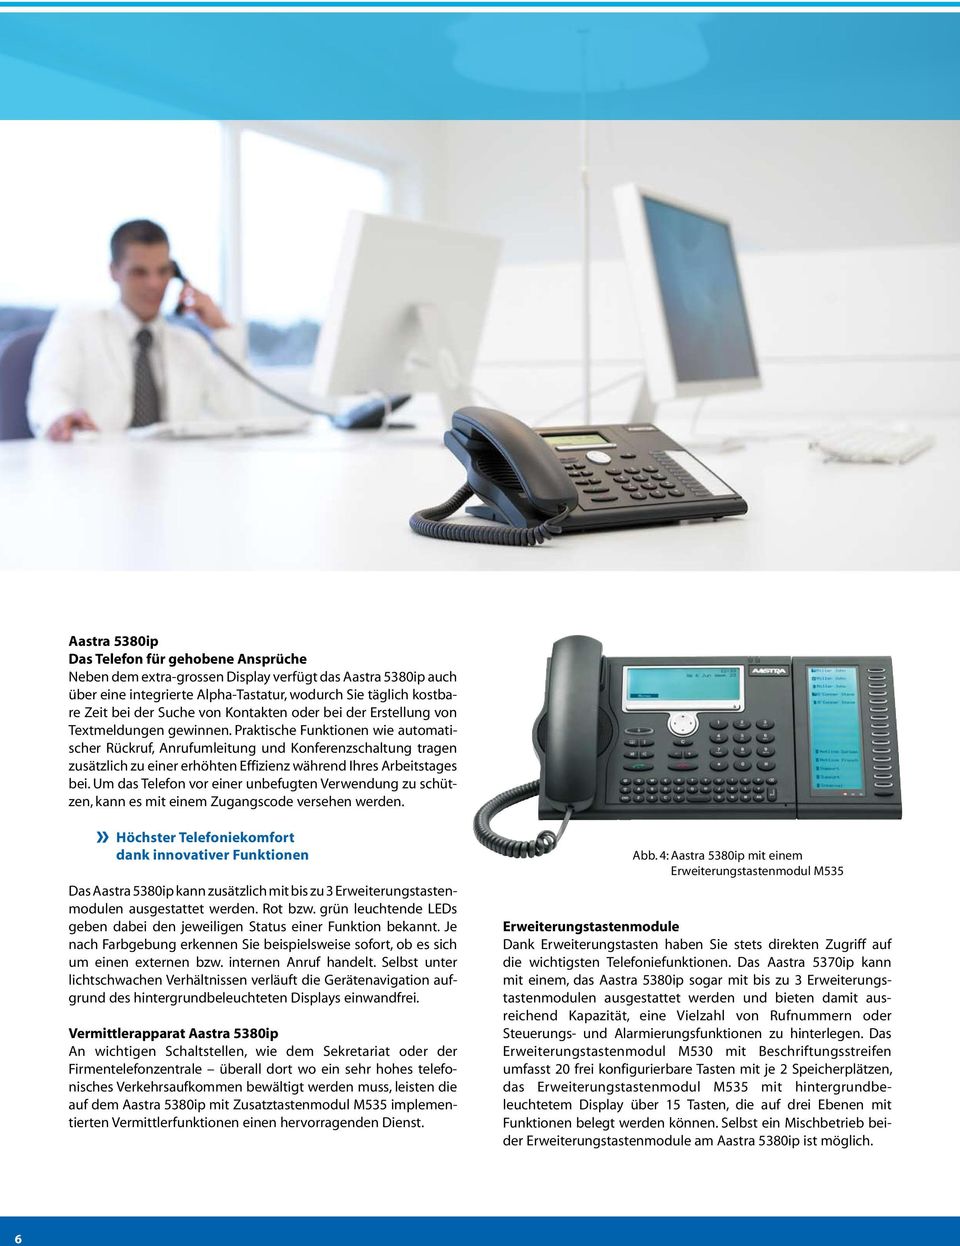 Praktische Funktionen wie automatischer Rückruf, Anrufumleitung und Konferenzschaltung tragen zusätzlich zu einer erhöhten Effizienz während Ihres Arbeitstages bei.